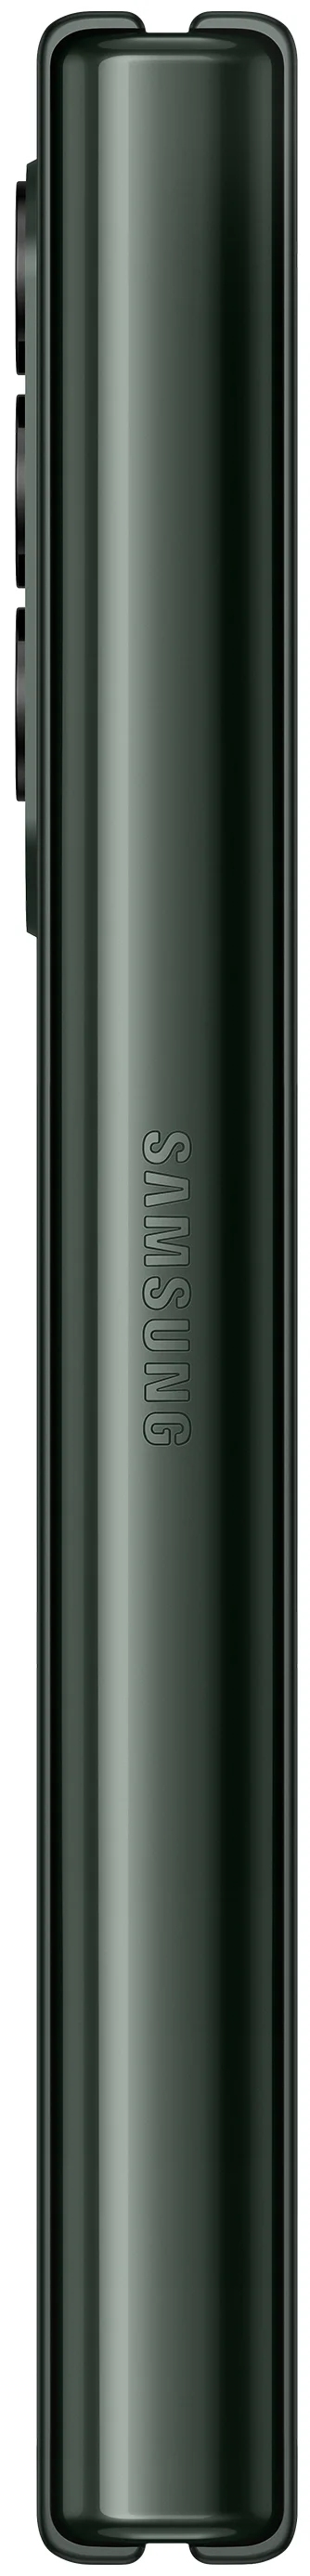 Смартфон Samsung Galaxy Z Fold3 512GB, зеленый - фото 7